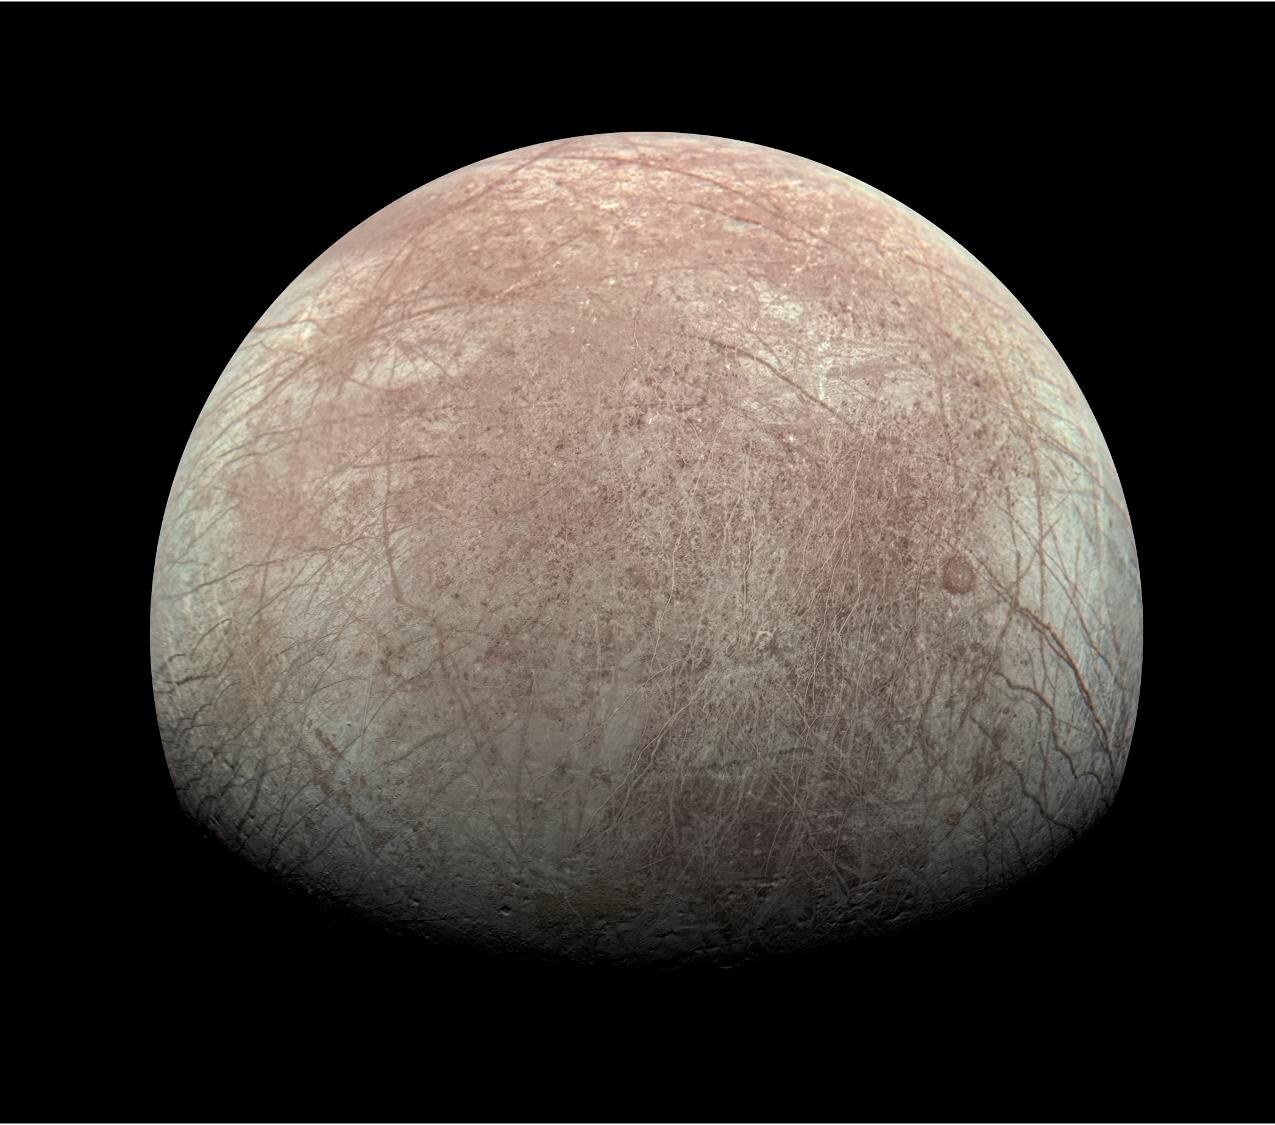 Europa Clipper abordera en mars 2031 l'un des principaux satellites de Jupiter, Europe, un « monde-océan » dont on suspecte qu’il abrite des formes de vie primitives. NASA/JPL-Caltech/SwRI/MSSS